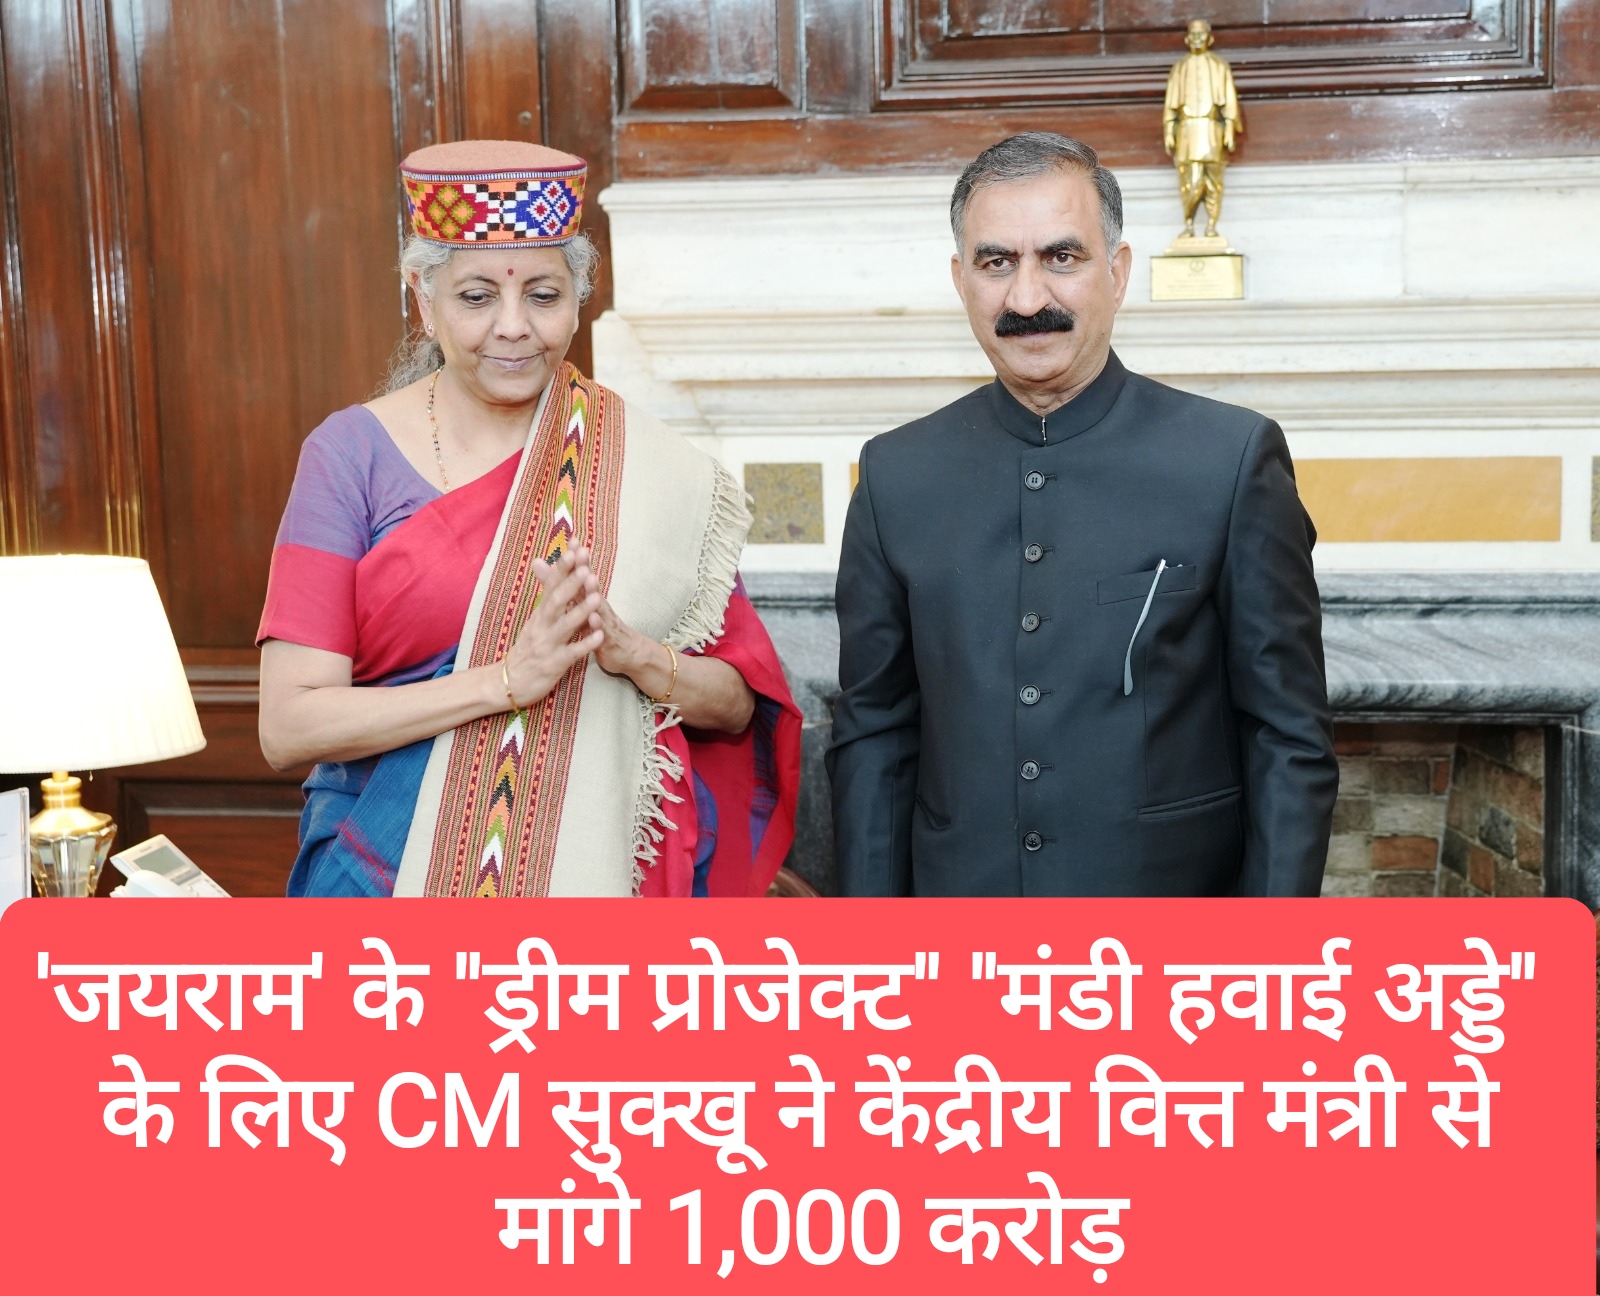 ‘जयराम’ के “ड्रीम प्रोजेक्ट” “मंडी हवाई अड्डे” के लिए CM सुक्खू ने केंद्रीय वित्त मंत्री से मांगे 1,000 करोड़ और…